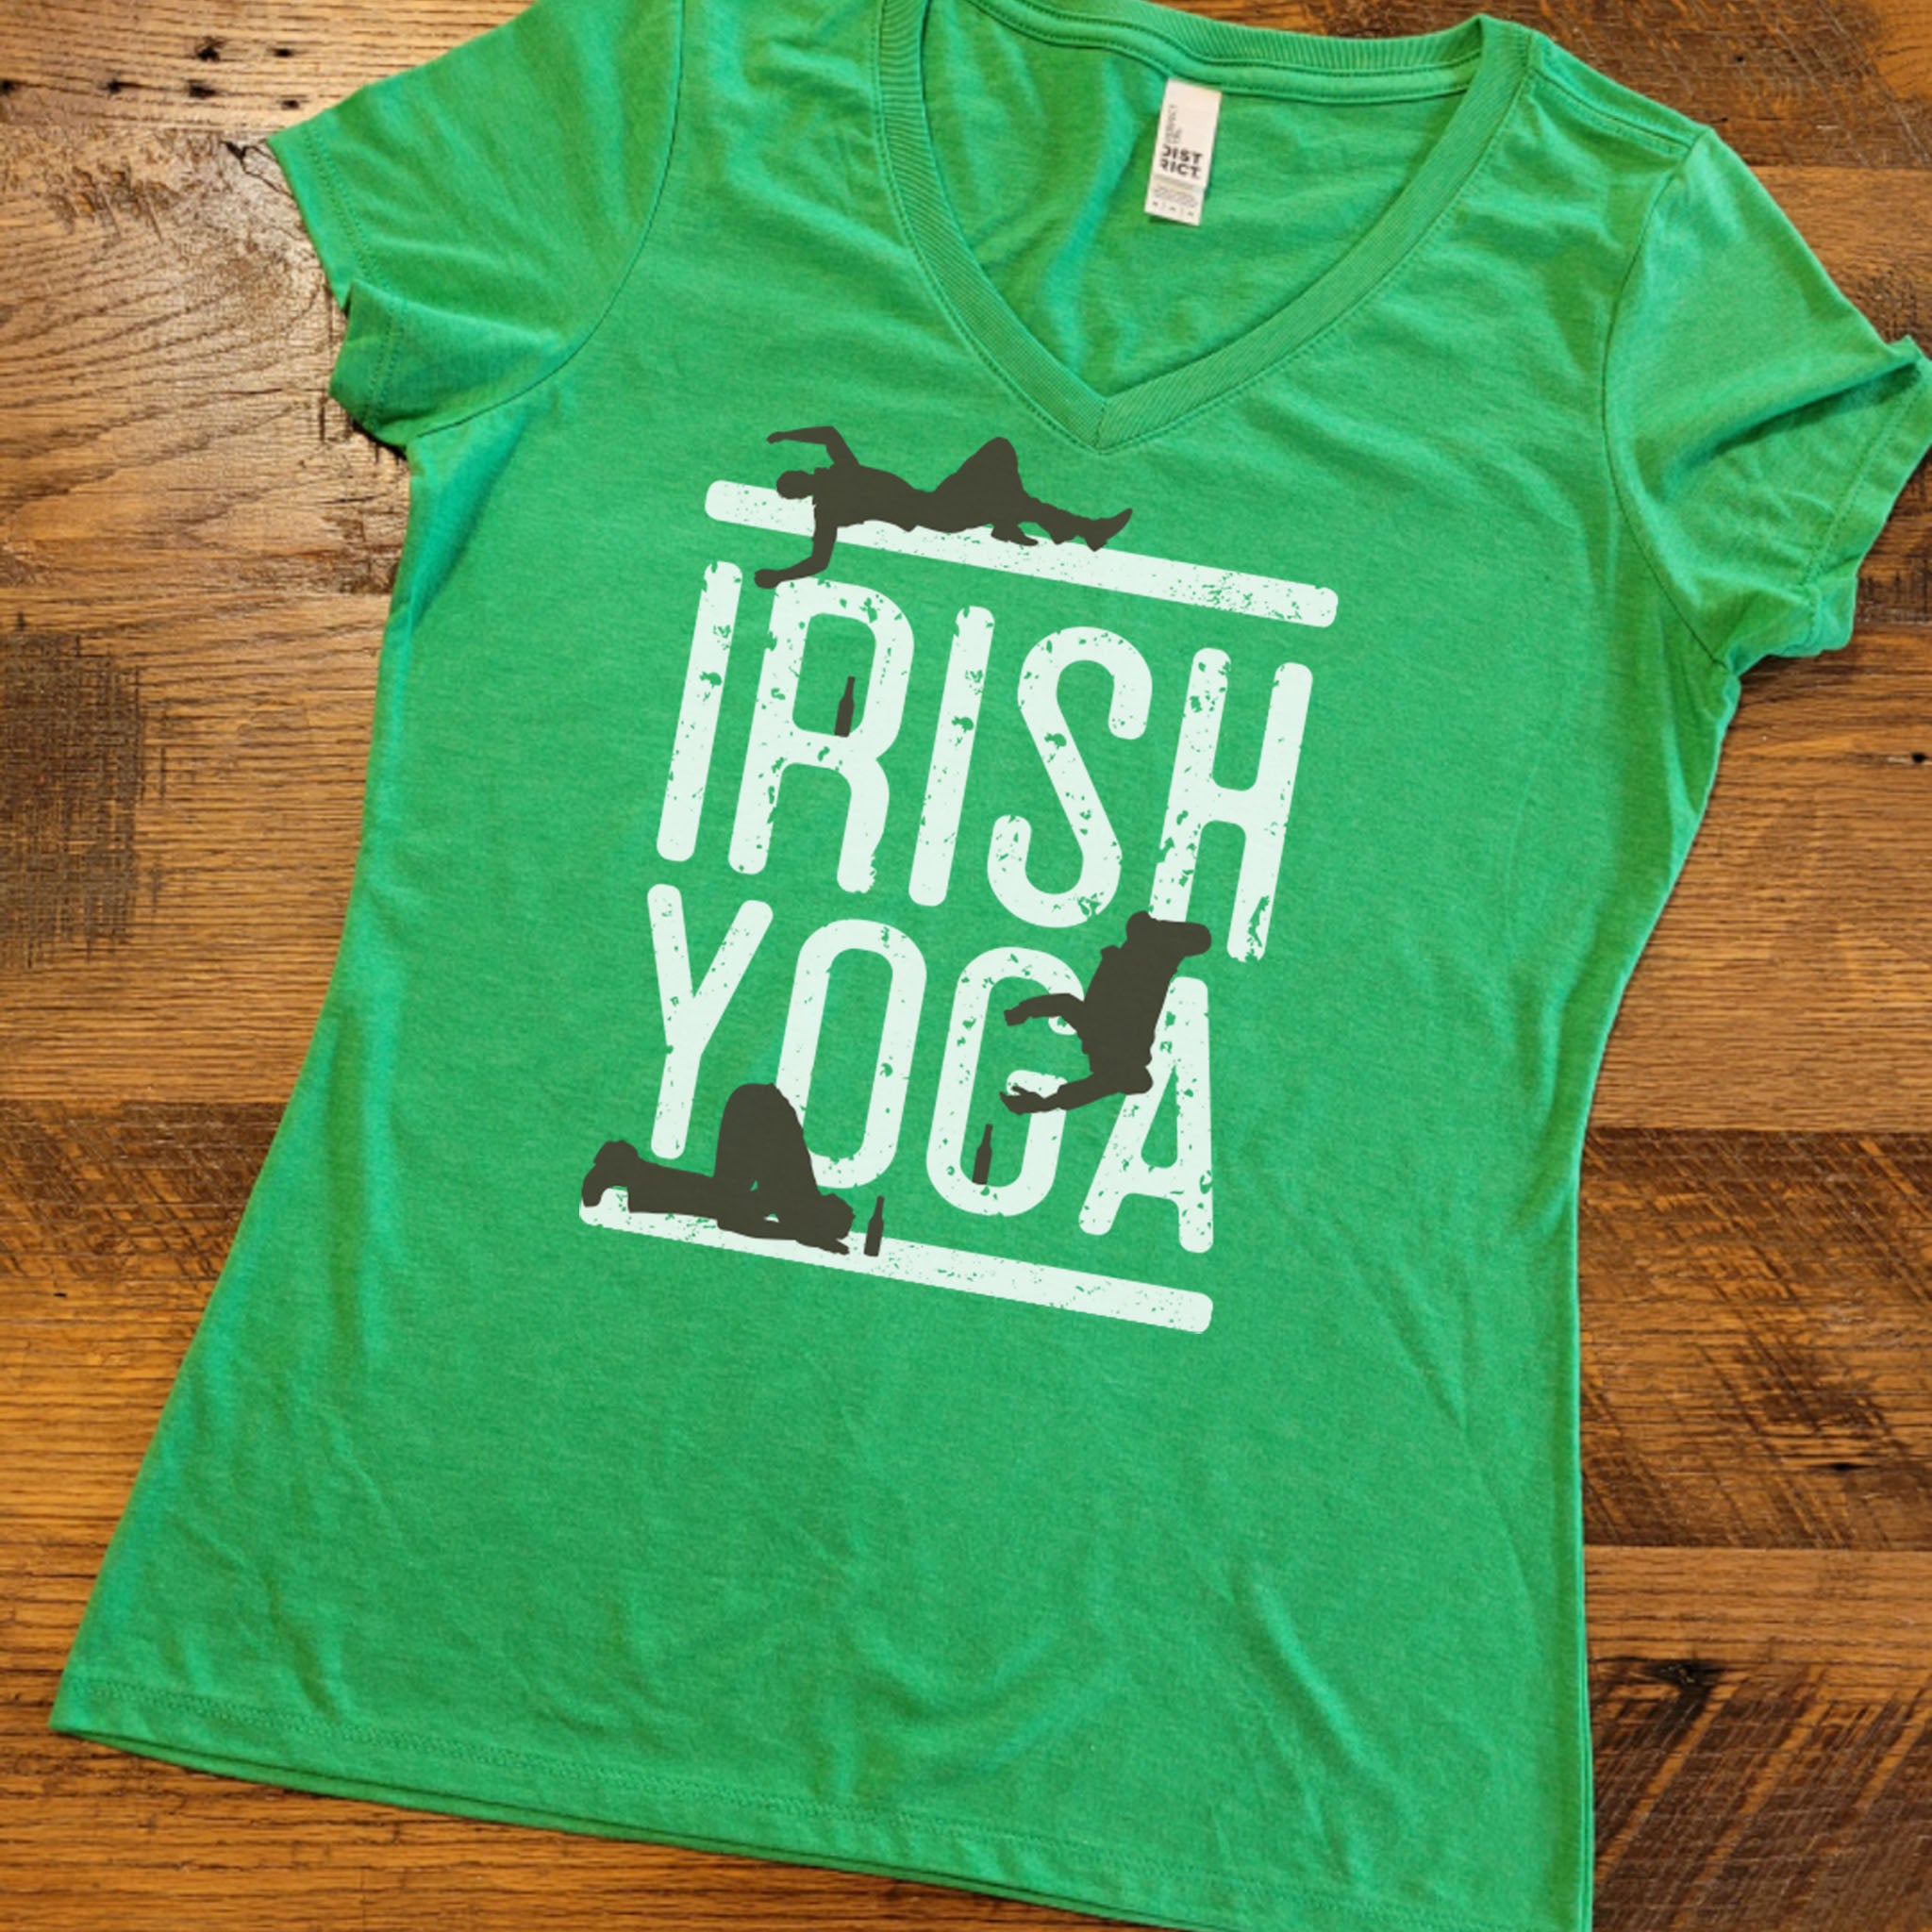 IRISH YOGA Shirt Women, St Patrick Day Night Out Party Shirt